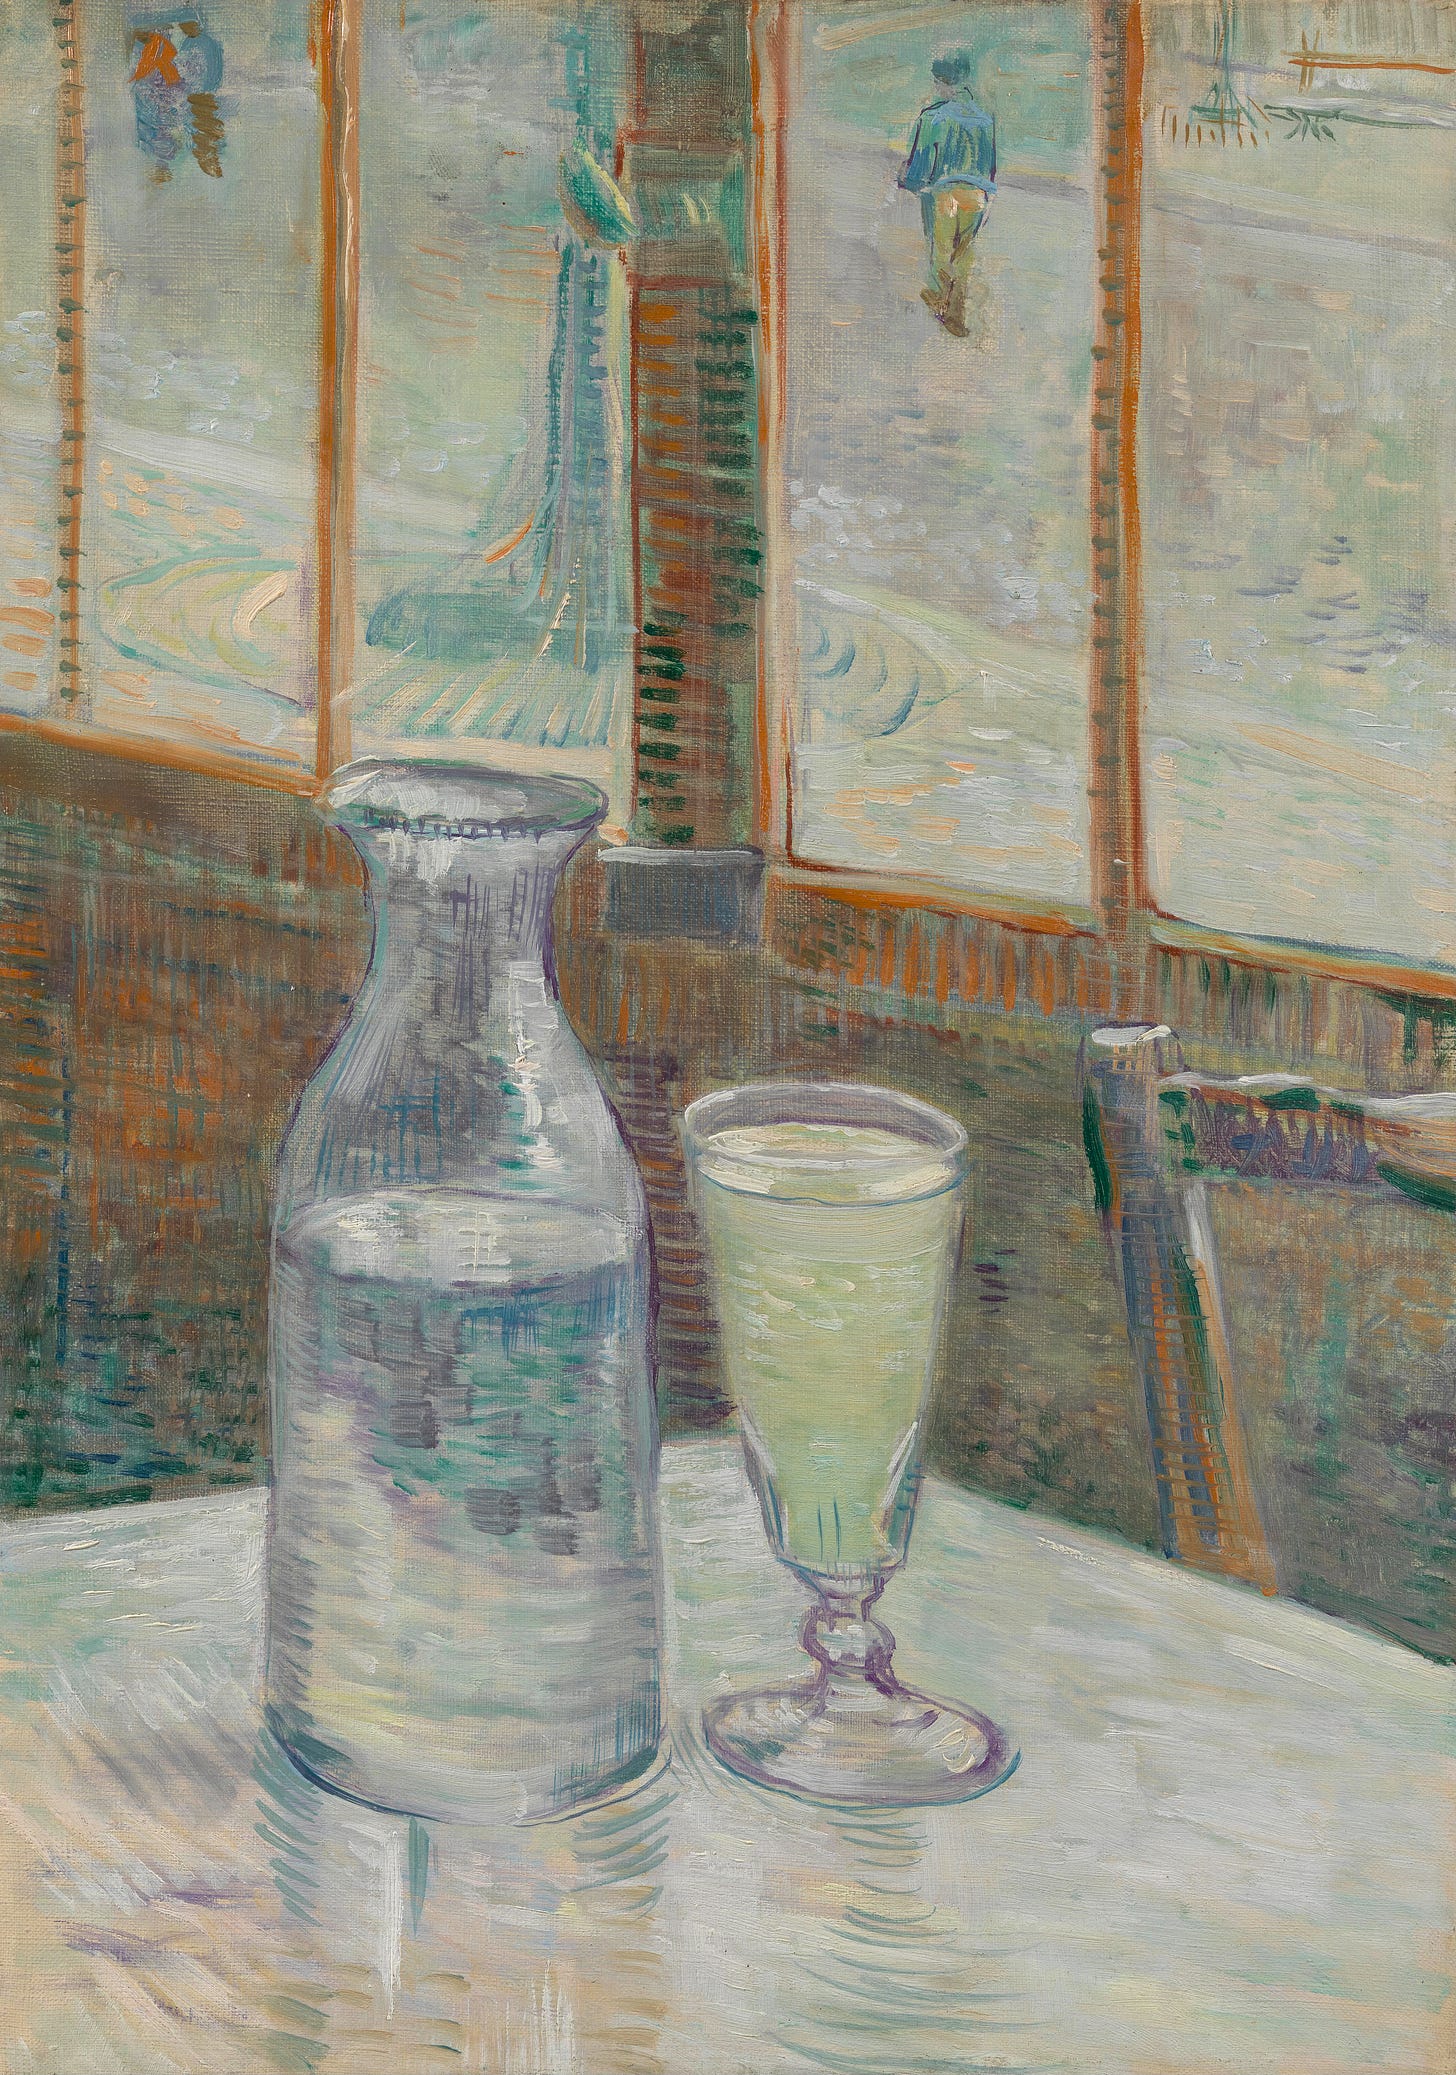 https://commons.wikimedia.org/wiki/File:Caf%C3%A9tafel_met_absint_-_s0186V1962_-_Van_Gogh_Museum.jpg